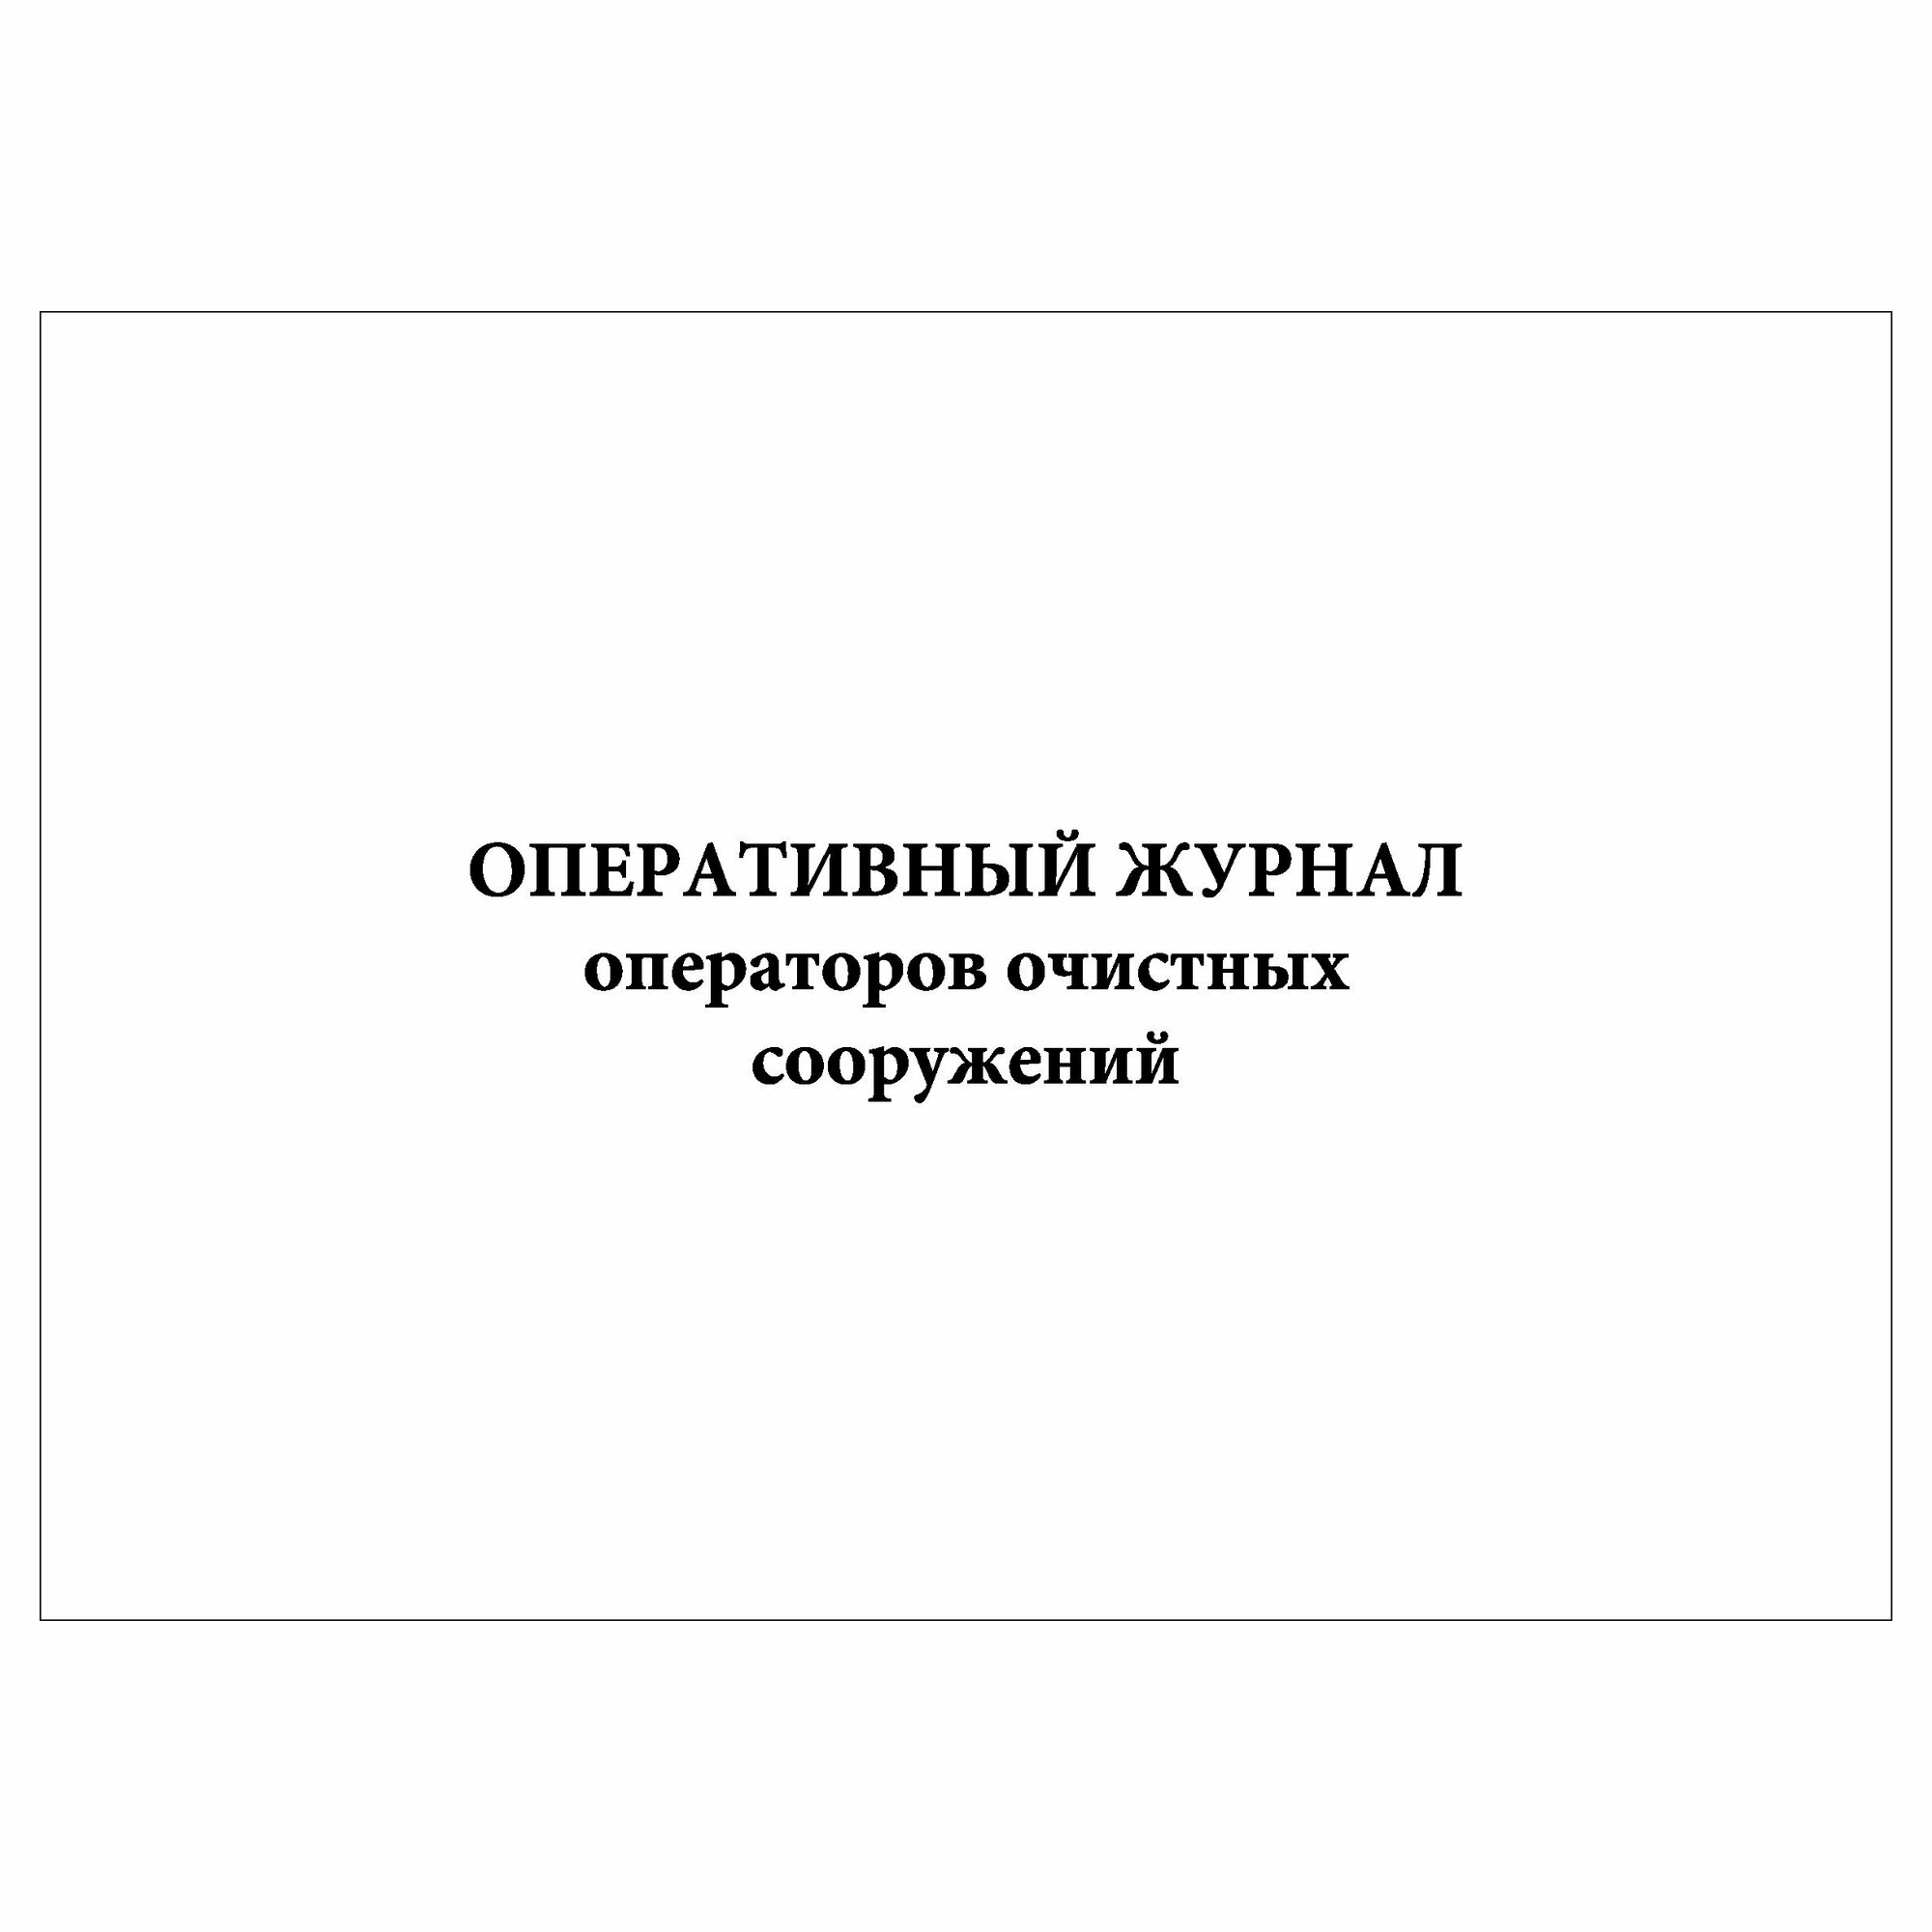 (1 шт.), Оперативный журнал операторов очистных сооружений (20 лист, полист. нумерация)